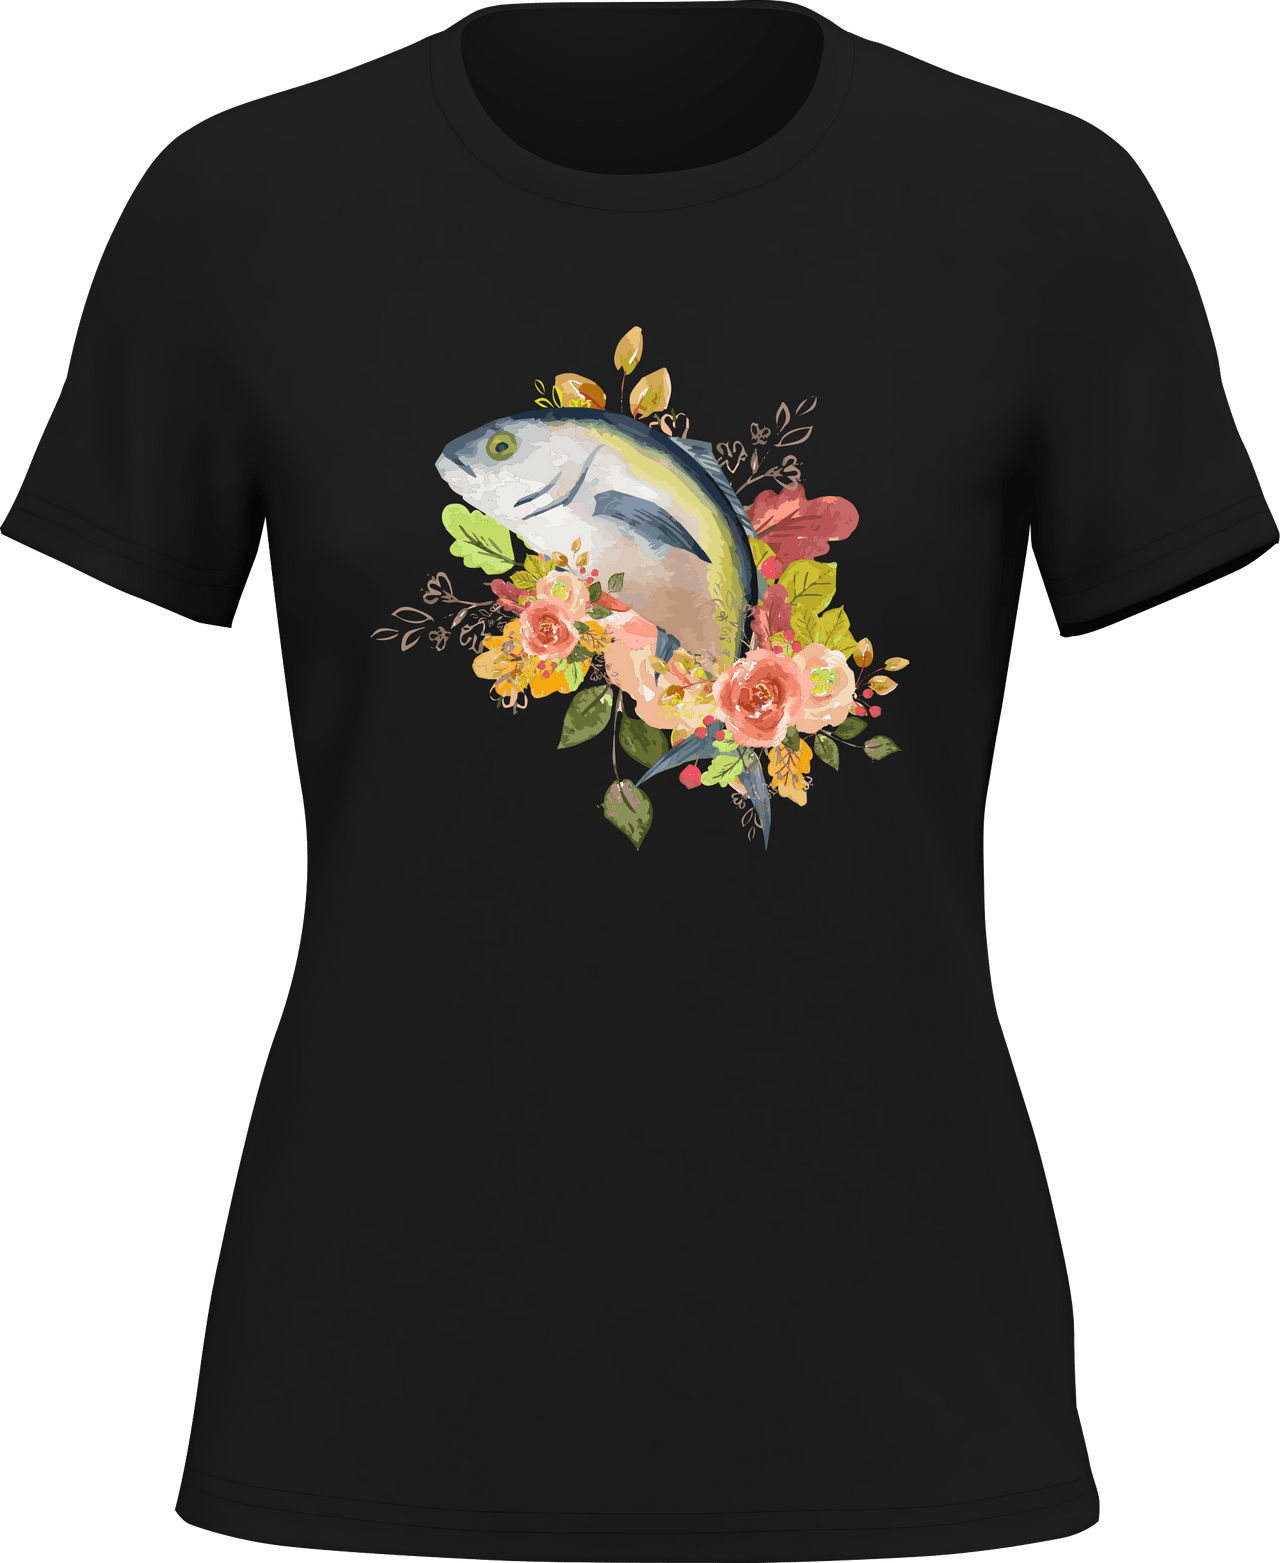 Fishing Flower T-Shirt for Women